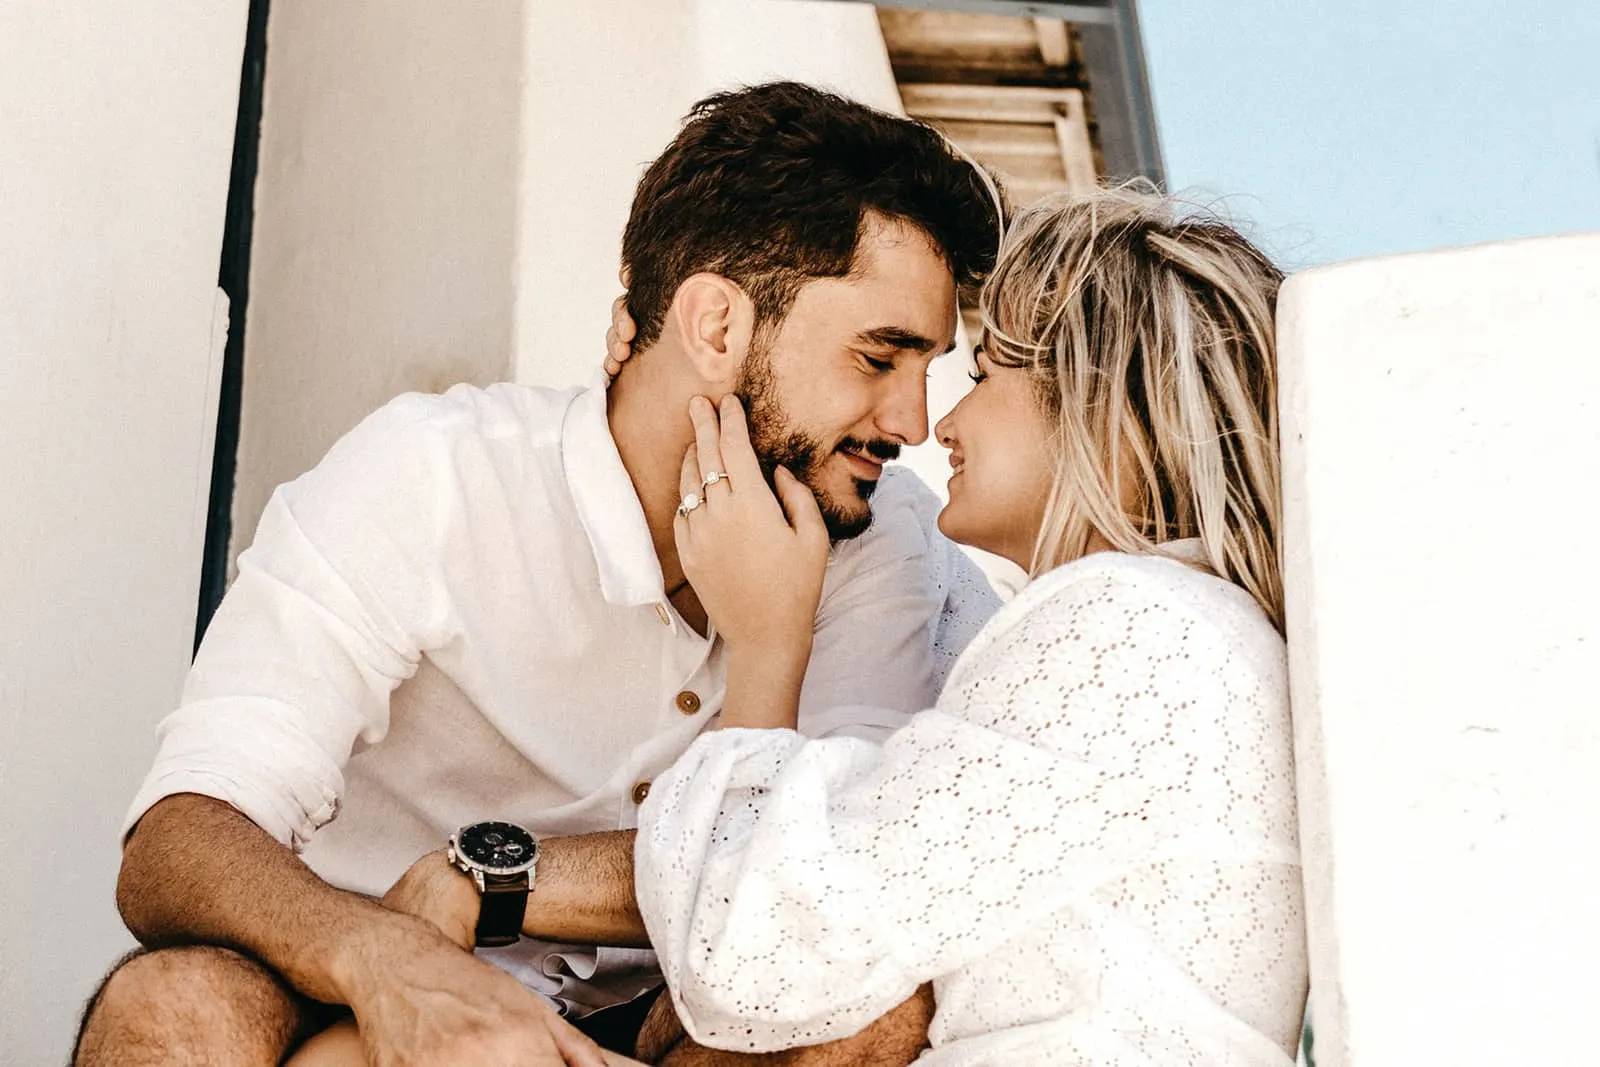 Eine lächelnde Frau, die das Gesicht ihres Mannes berührt, will sich küssen